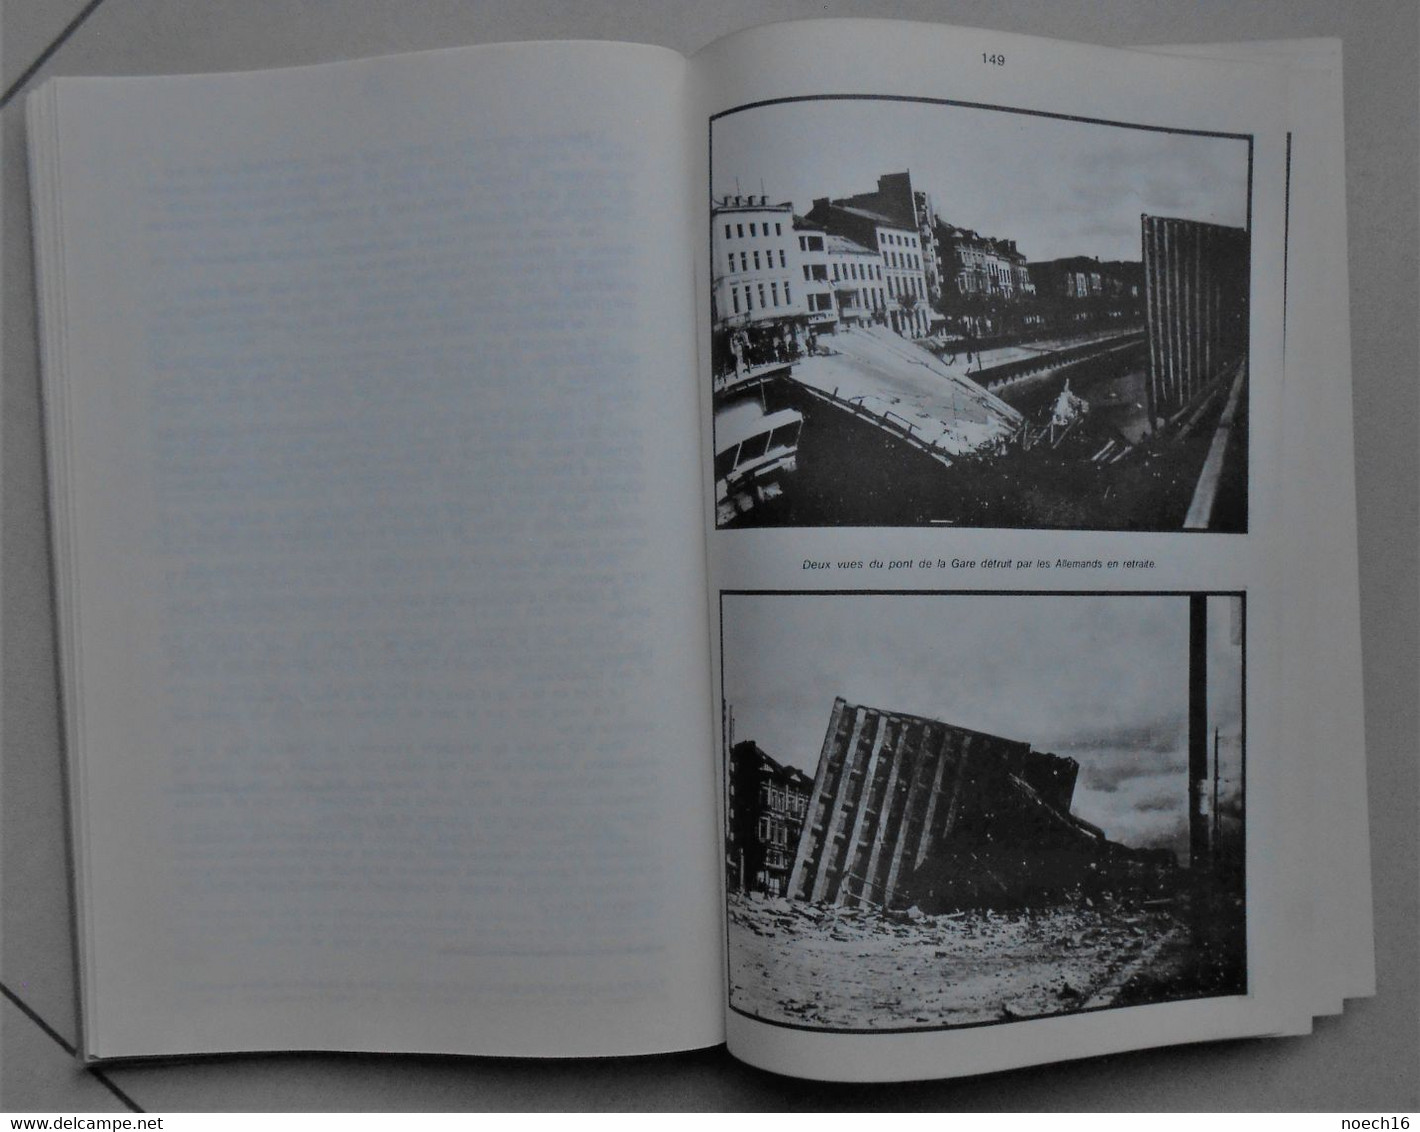 livre - Il y a trente ans - La libération de Charleroi - André Neufort 1977